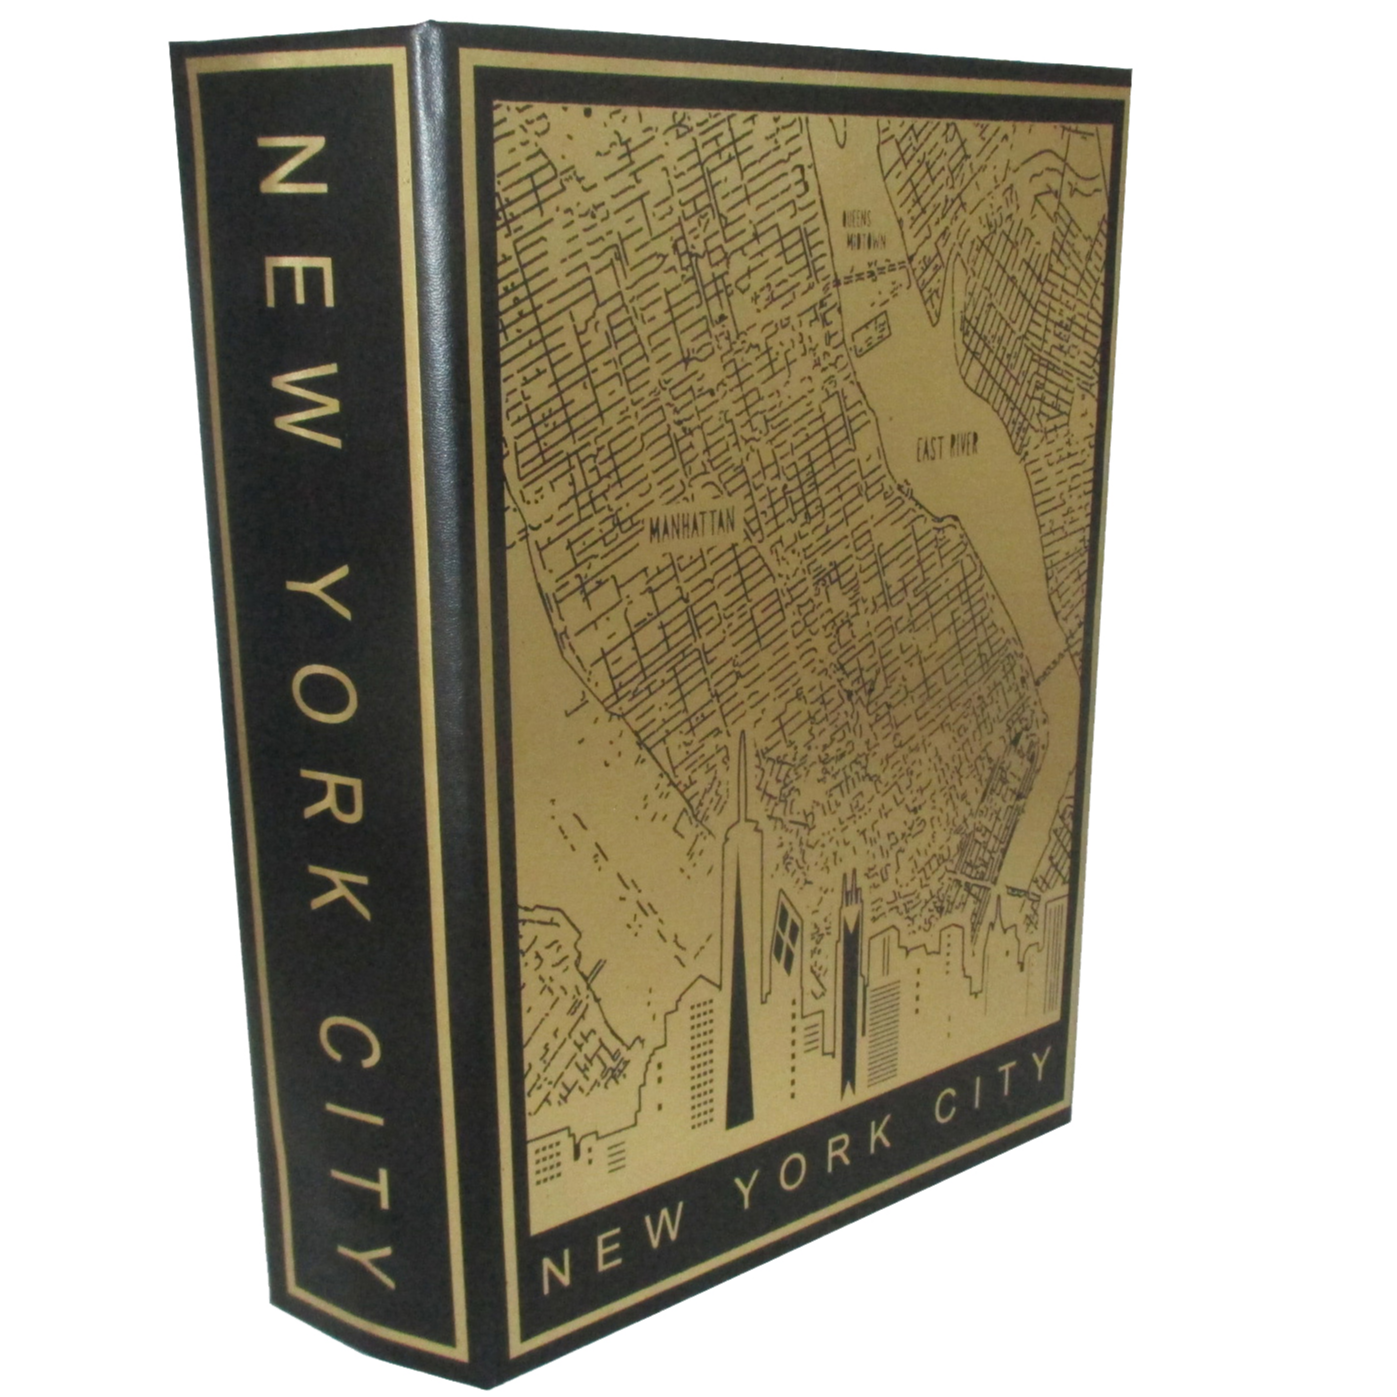 Caixa Biblioteca livro New York em mdf L30xP7xA21cm